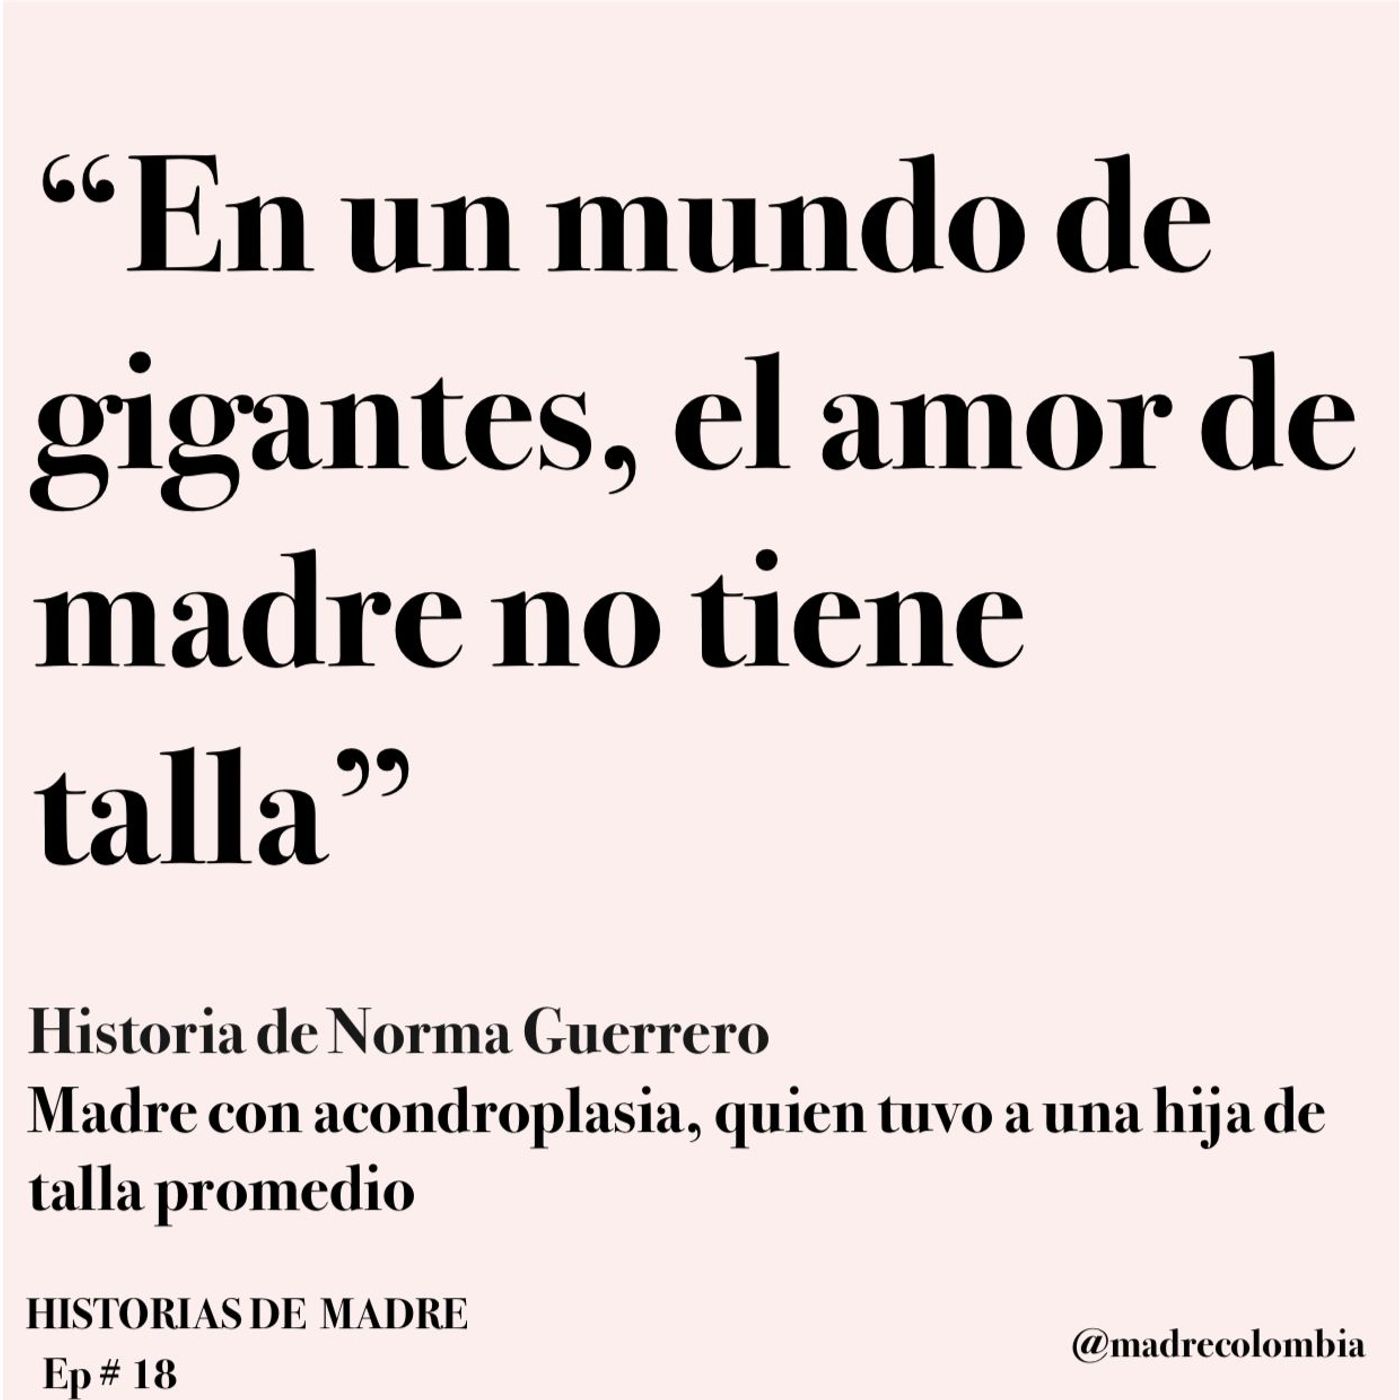 Ep. 18 Historia de Norma Guerrero - Mamá con acondroplasia